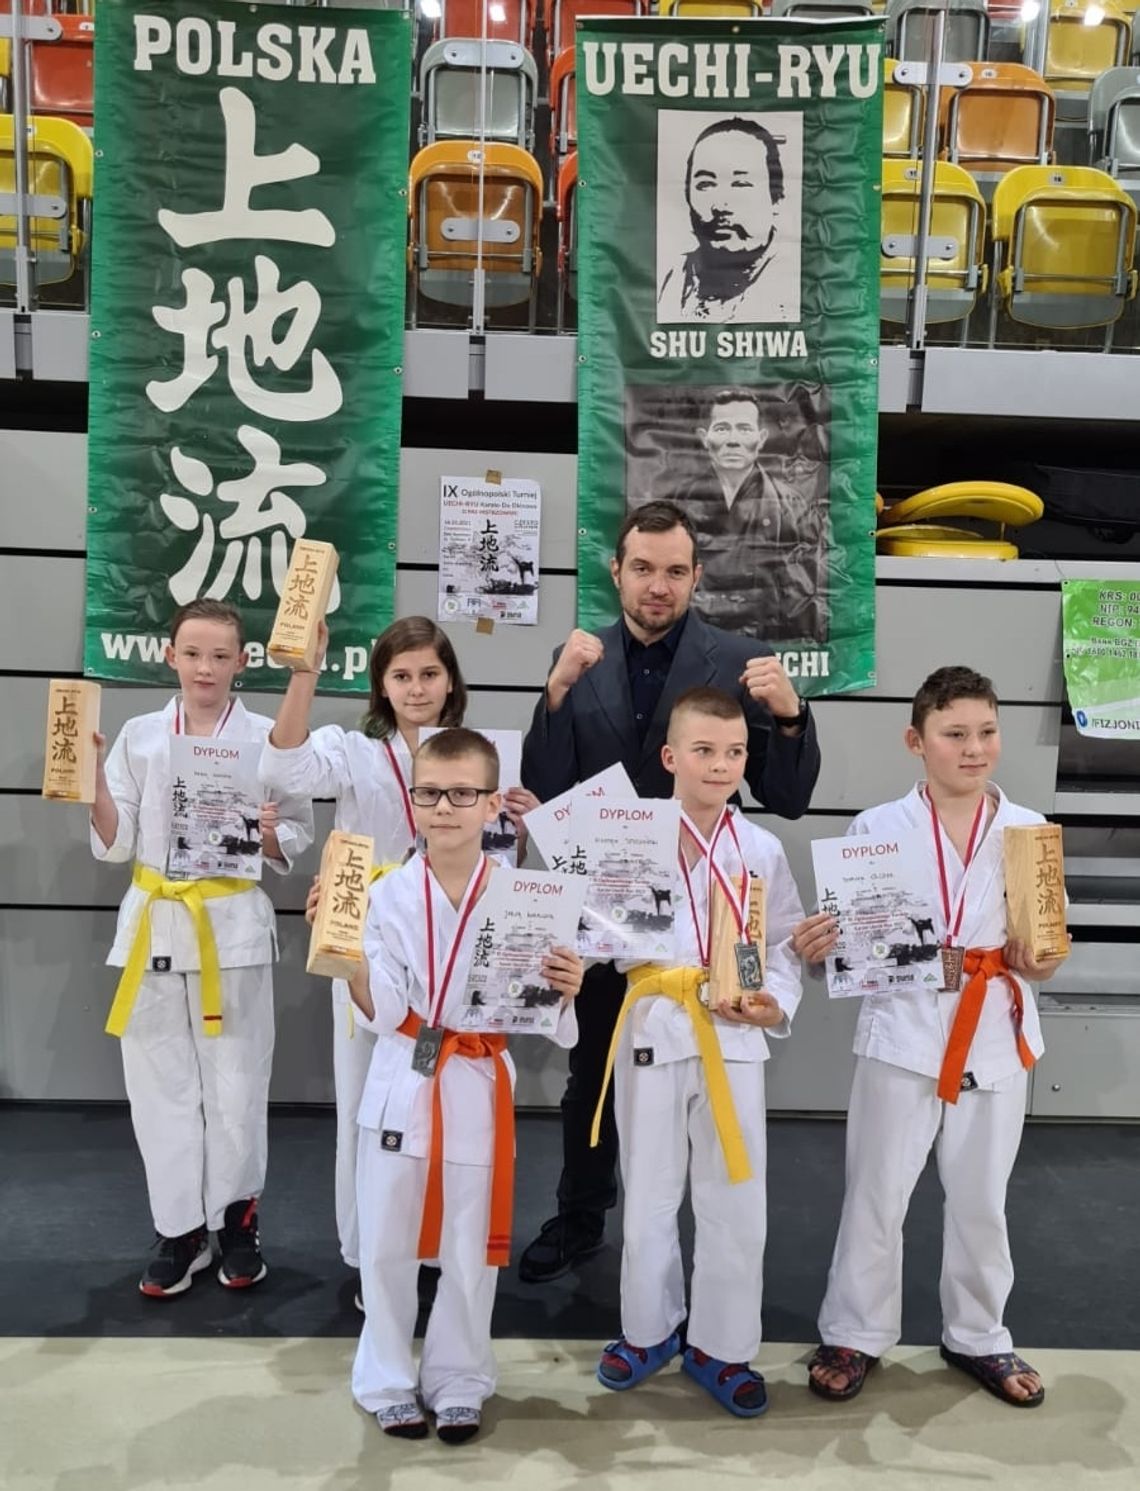 Worek medali zawodników karatecy Klubu Karate Randori na IX Ogólnopolskiego Turnieju Karate Uechi-Ryu w Częstochowie